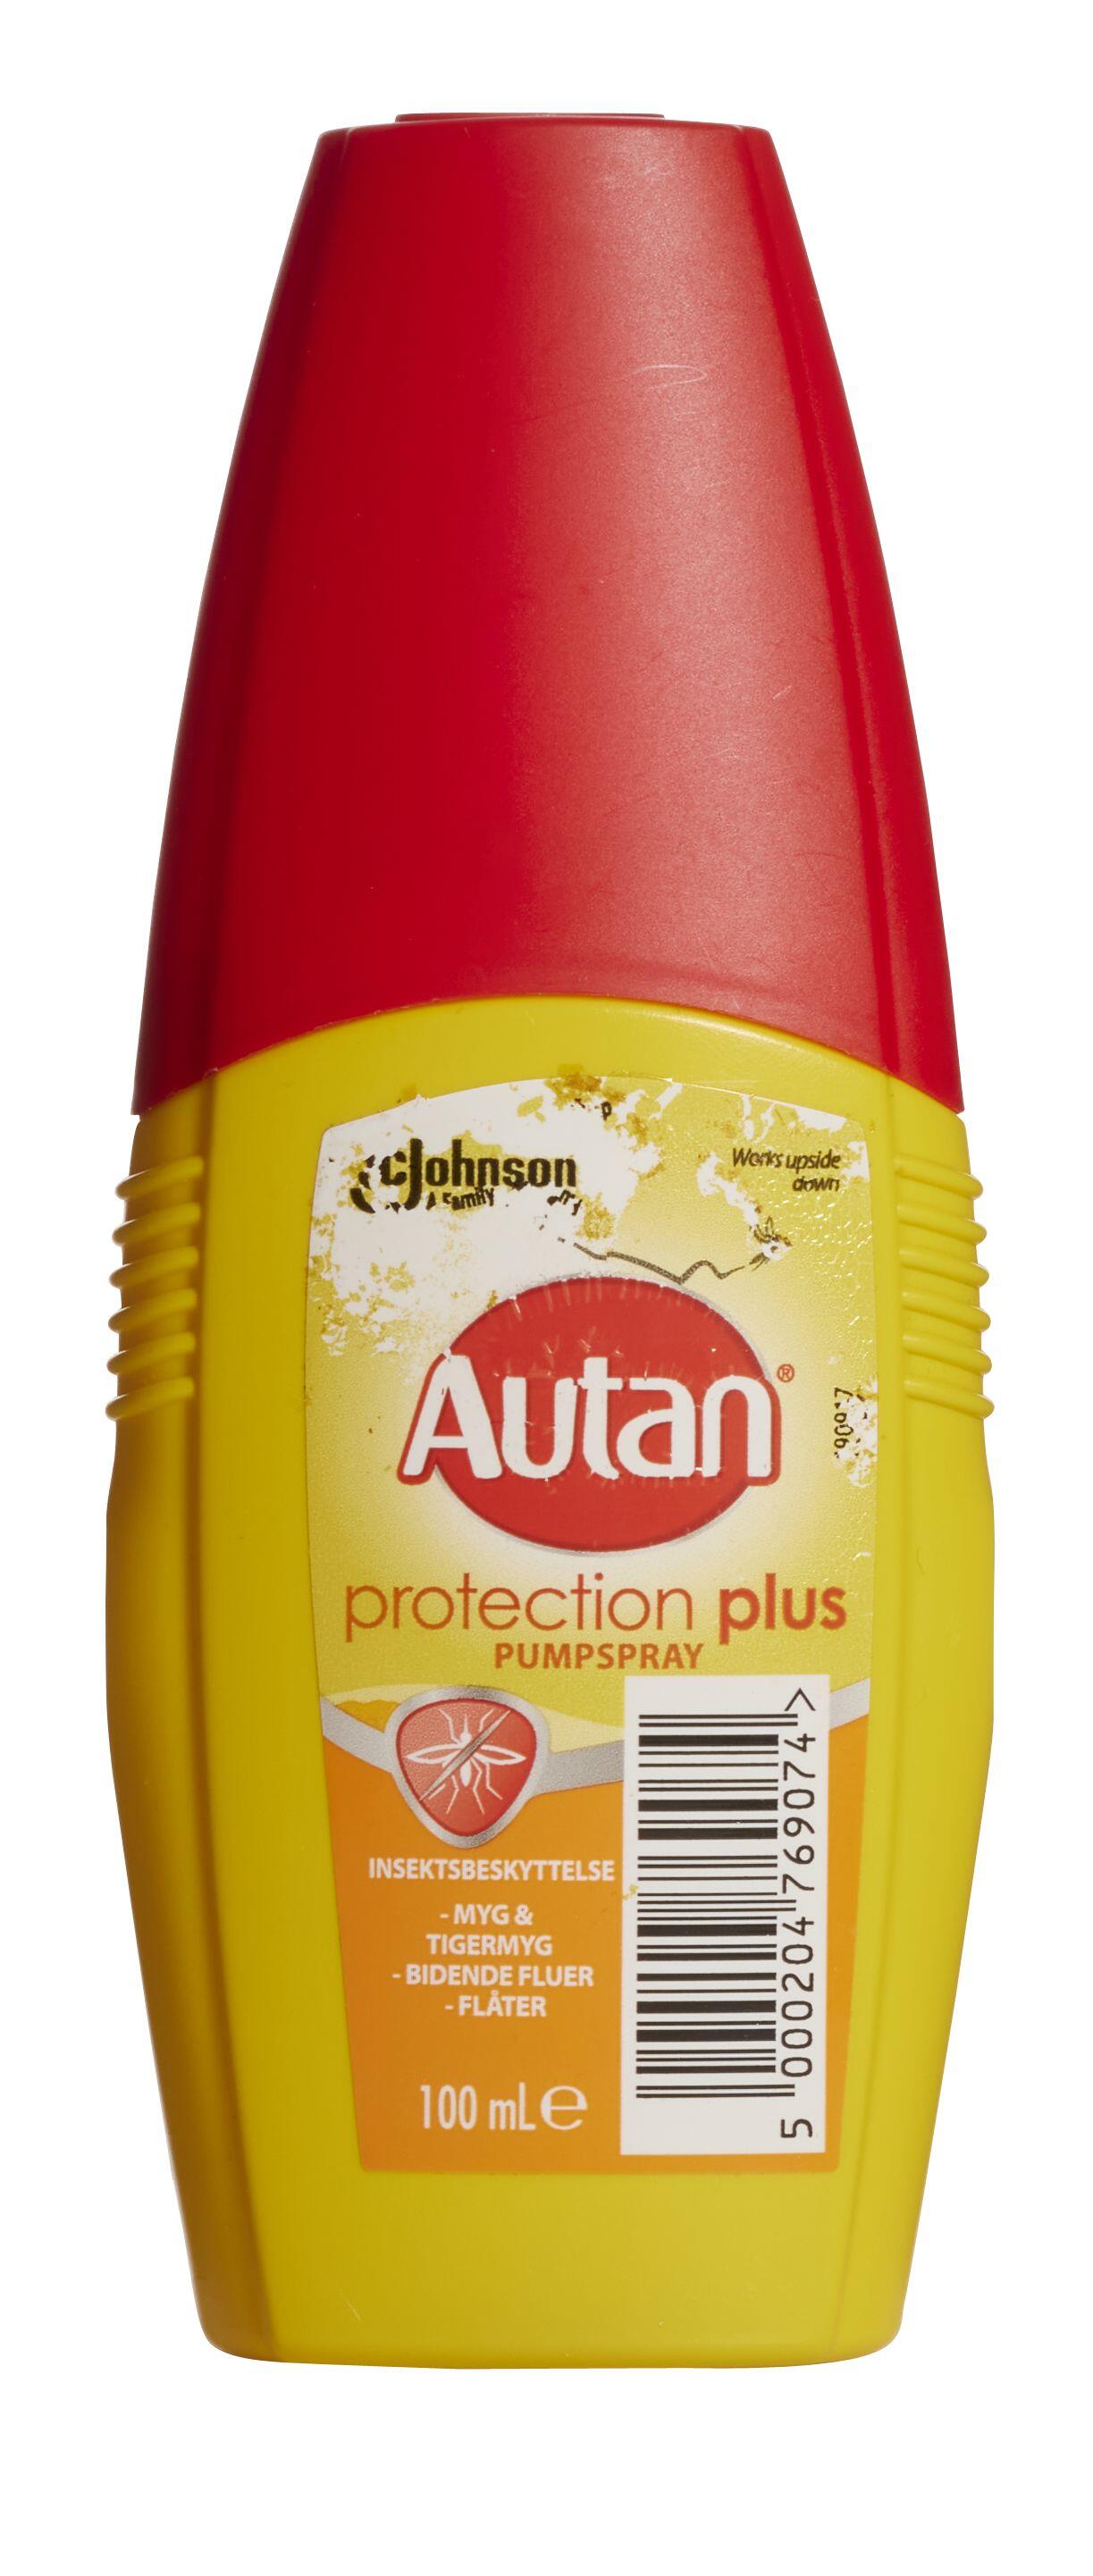 Protection Plus Pumpspray Autan